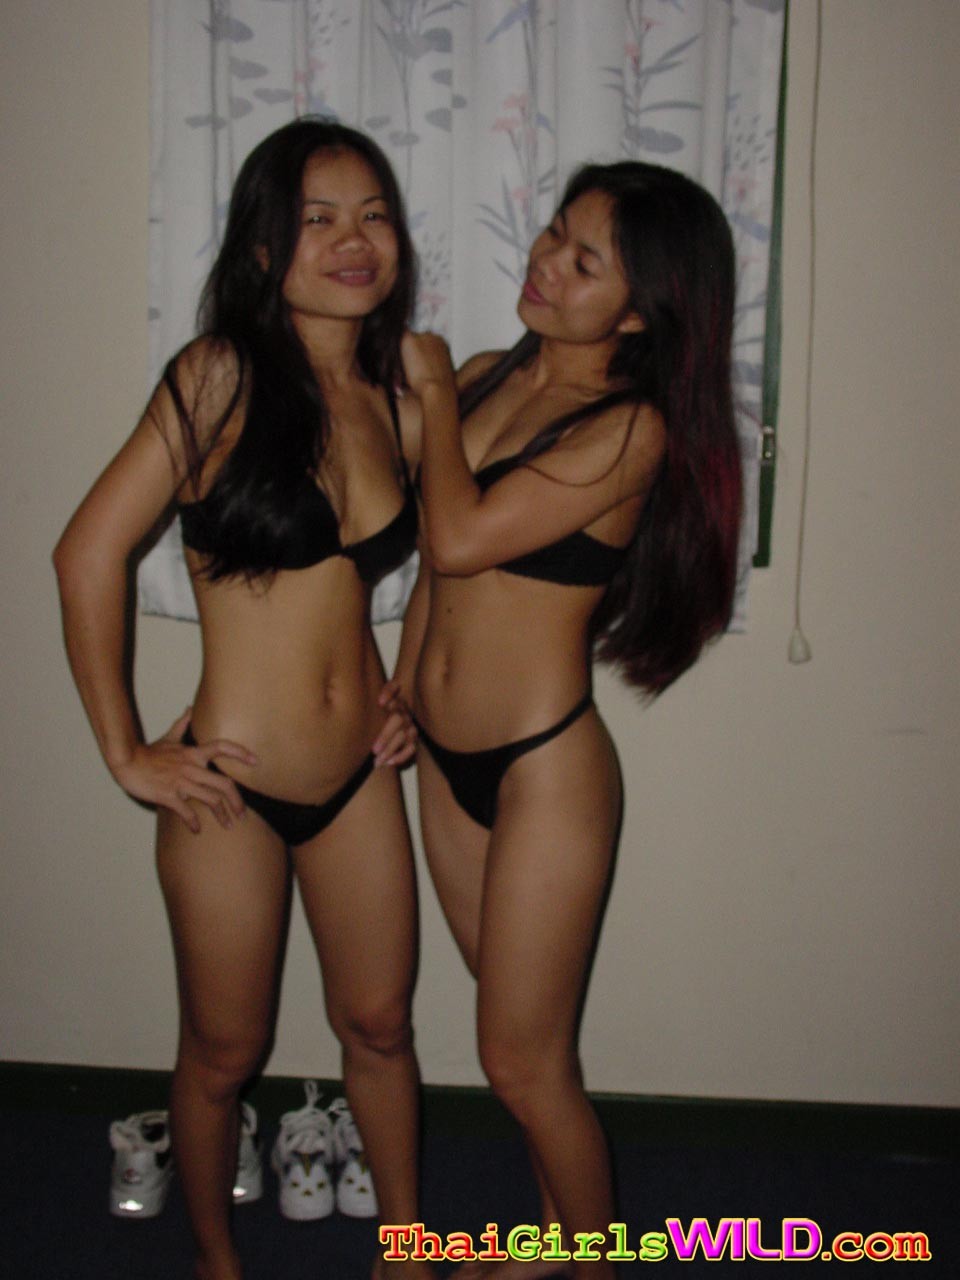 Des jumelles thaïlandaises mignonnes posent et s'amusent devant l'appareil photo.
 #67964202